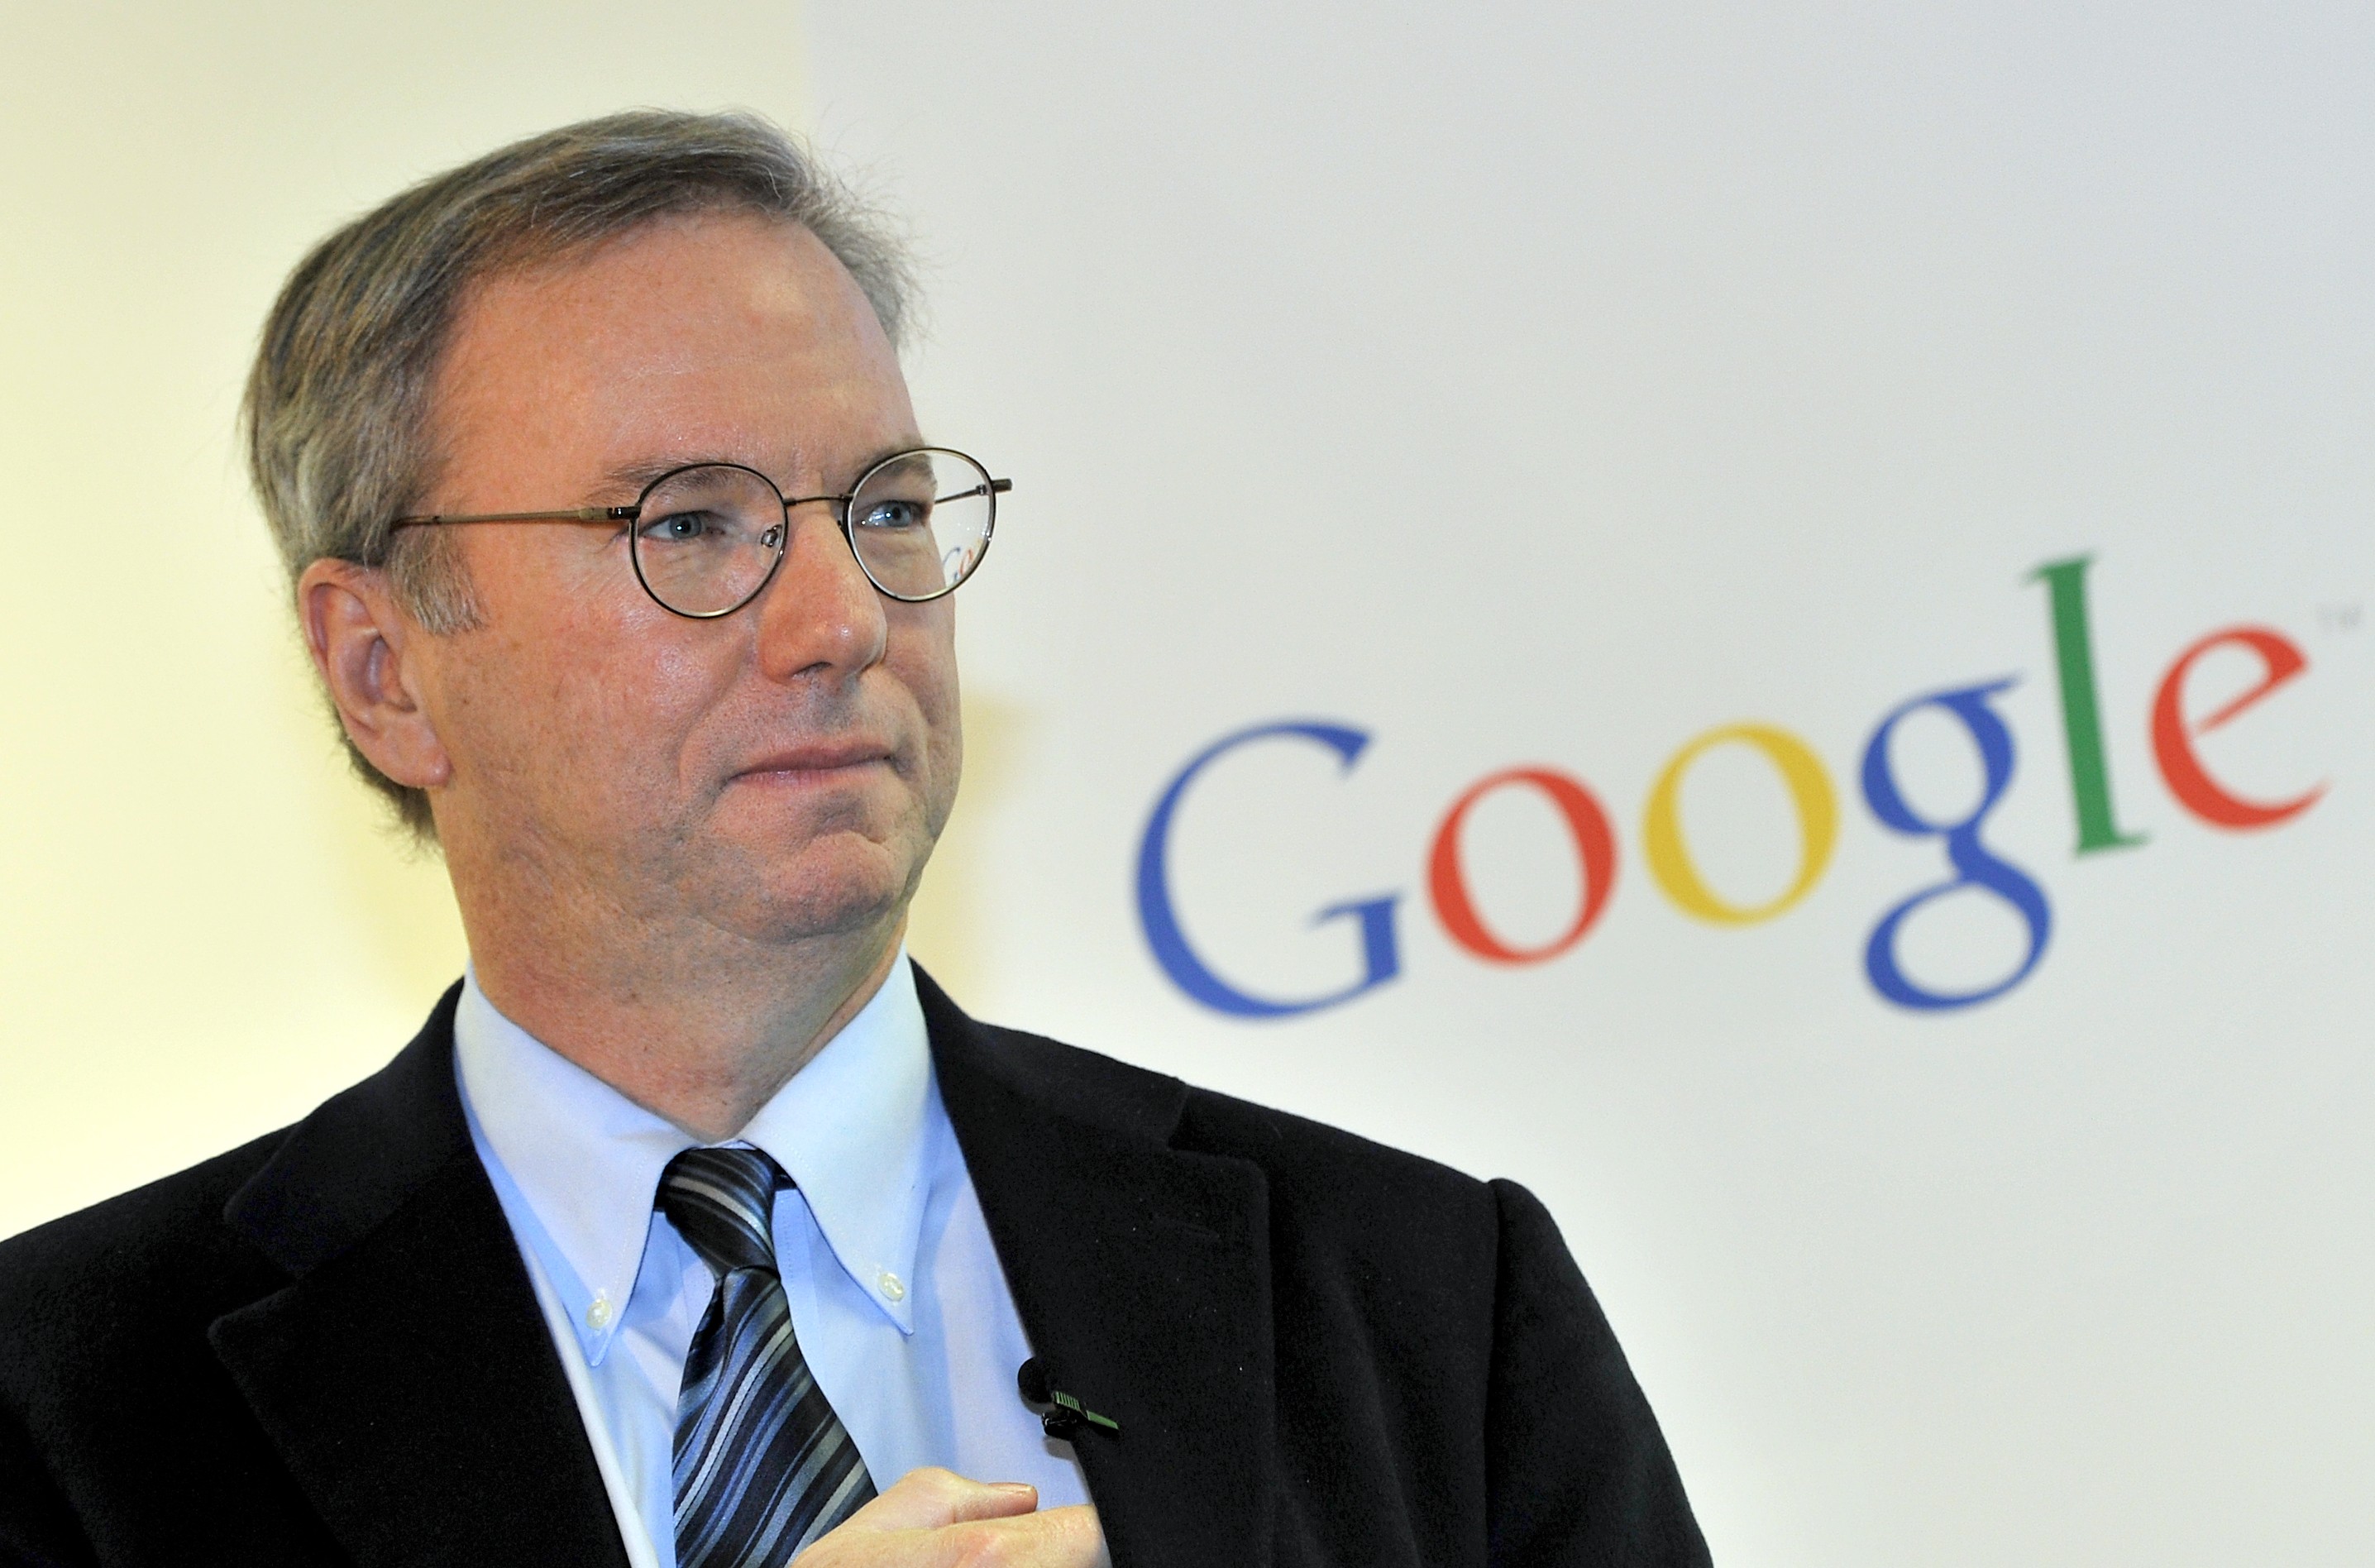 El ex CEO de Google afirmó que las redes sociales son unas “amplificadoras  de idiotas y locos” - Infobae